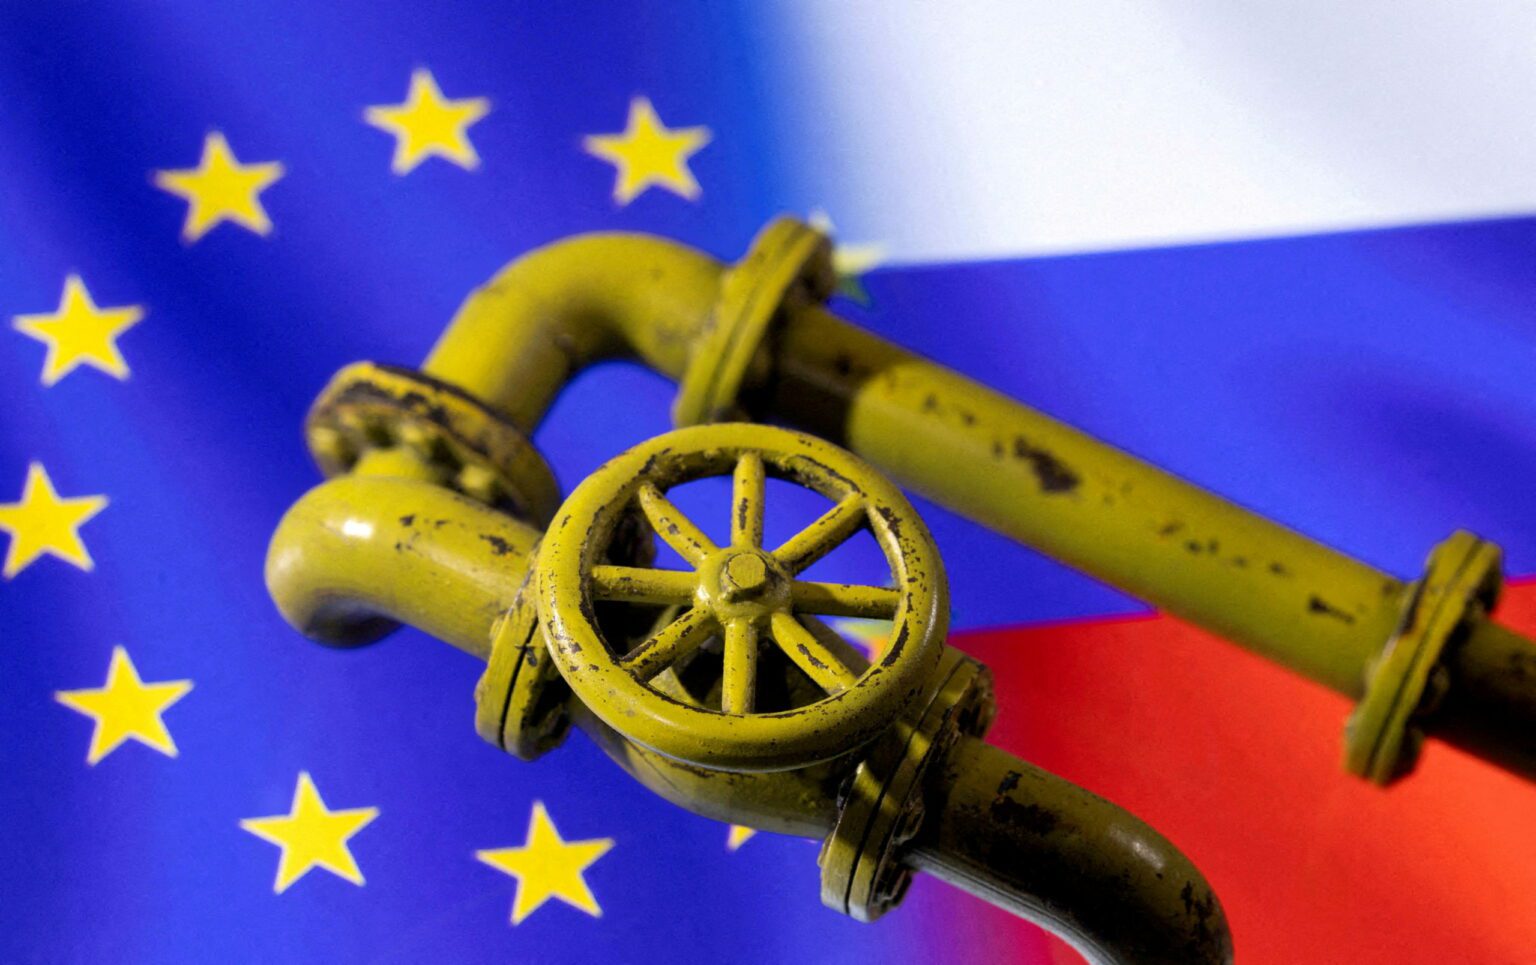 الحزمة السادسة: تباينات أوروبية في مواجهة حظر واردات الطاقة الروسية